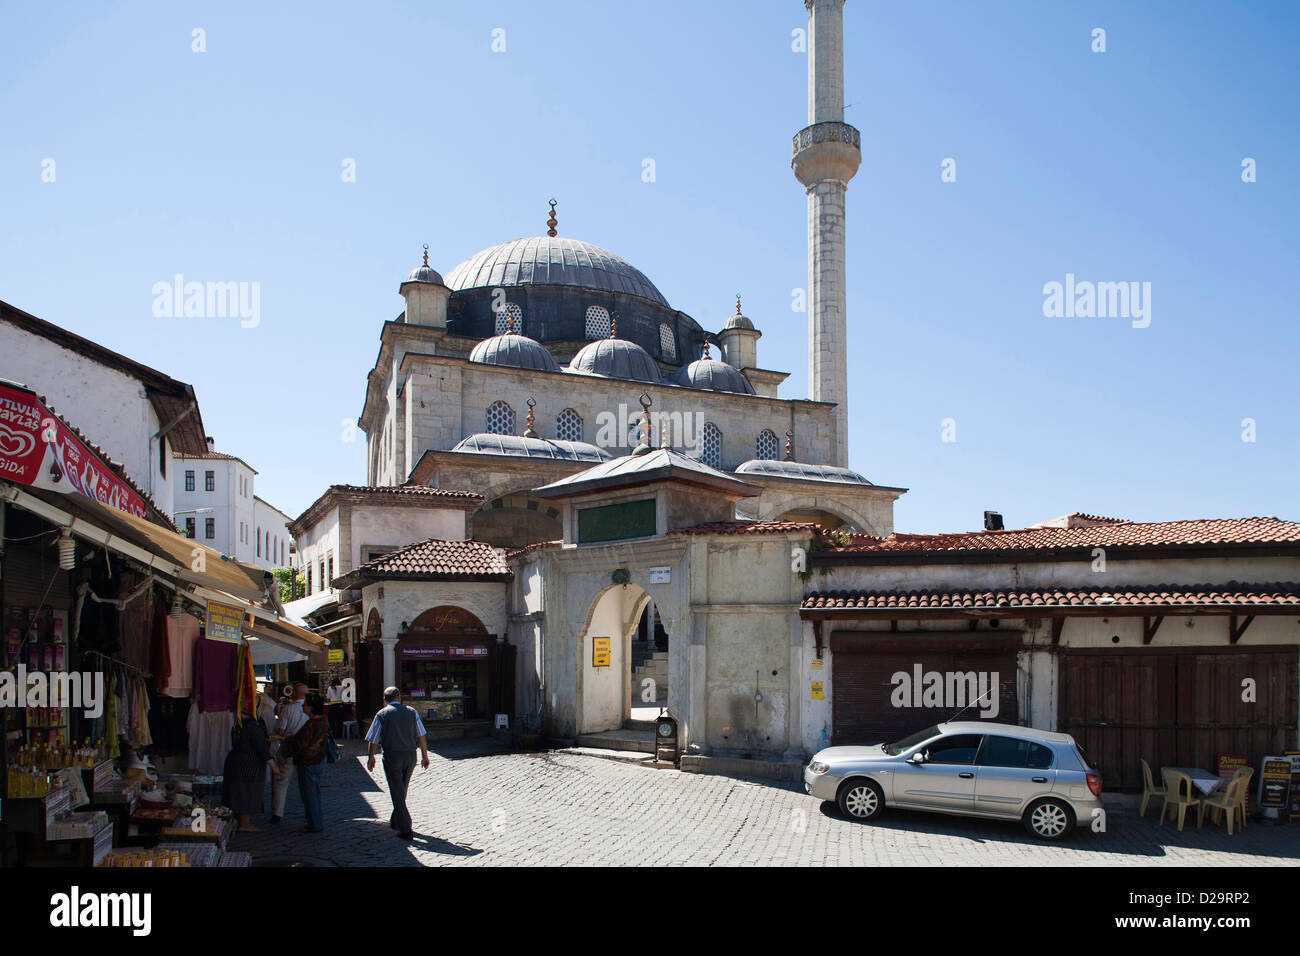 Asia, la Turchia, Anatolia centrale, antica città di Safranbolu, izzet pasa camii Foto Stock